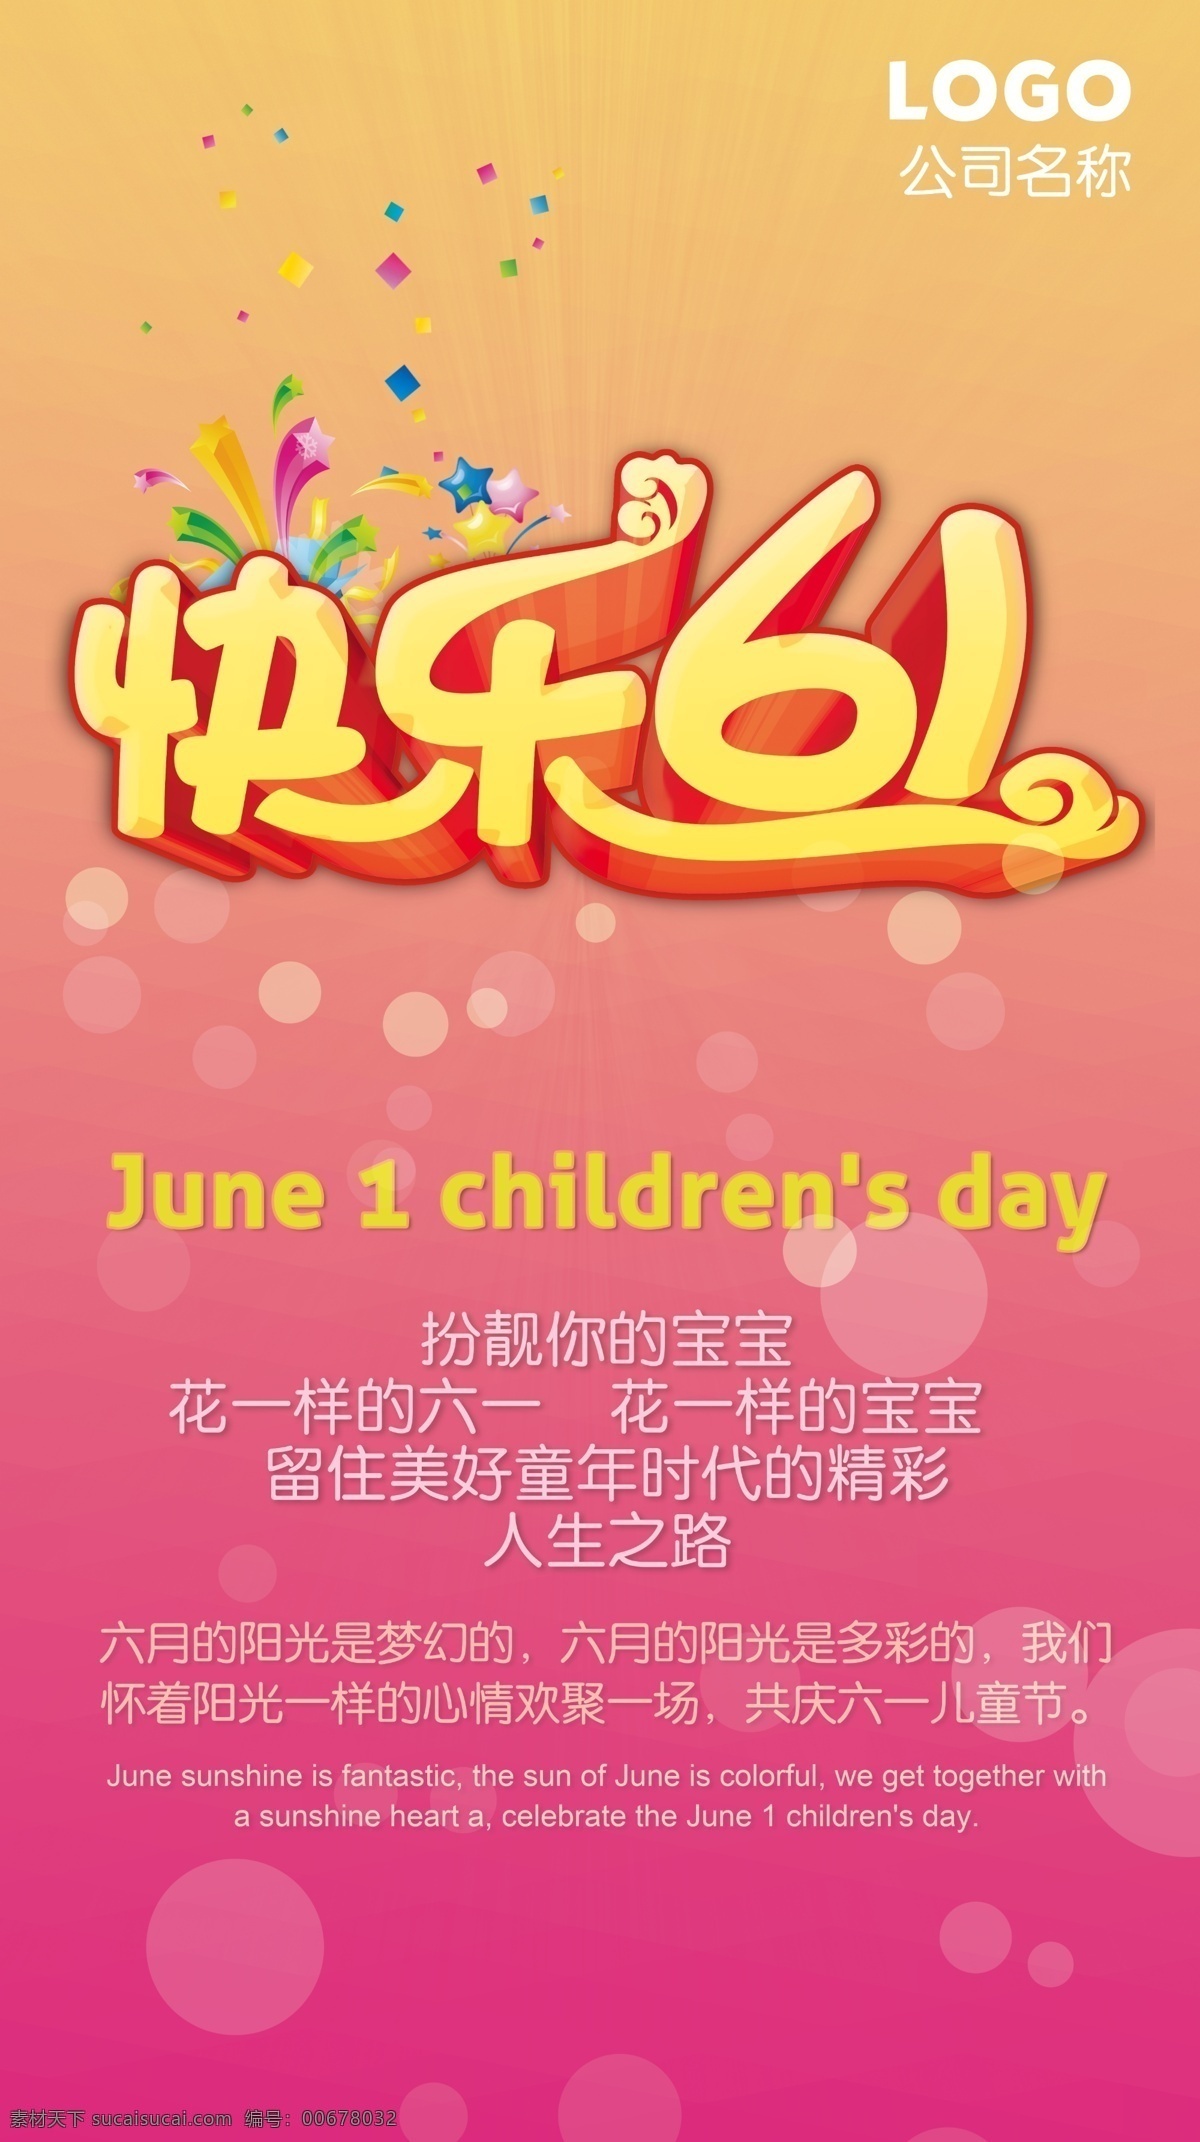 快乐 61 海报 儿童 儿童节快乐 儿童乐园 儿童天地 放飞梦想 快乐成长 六一 六一儿童节 幼儿园